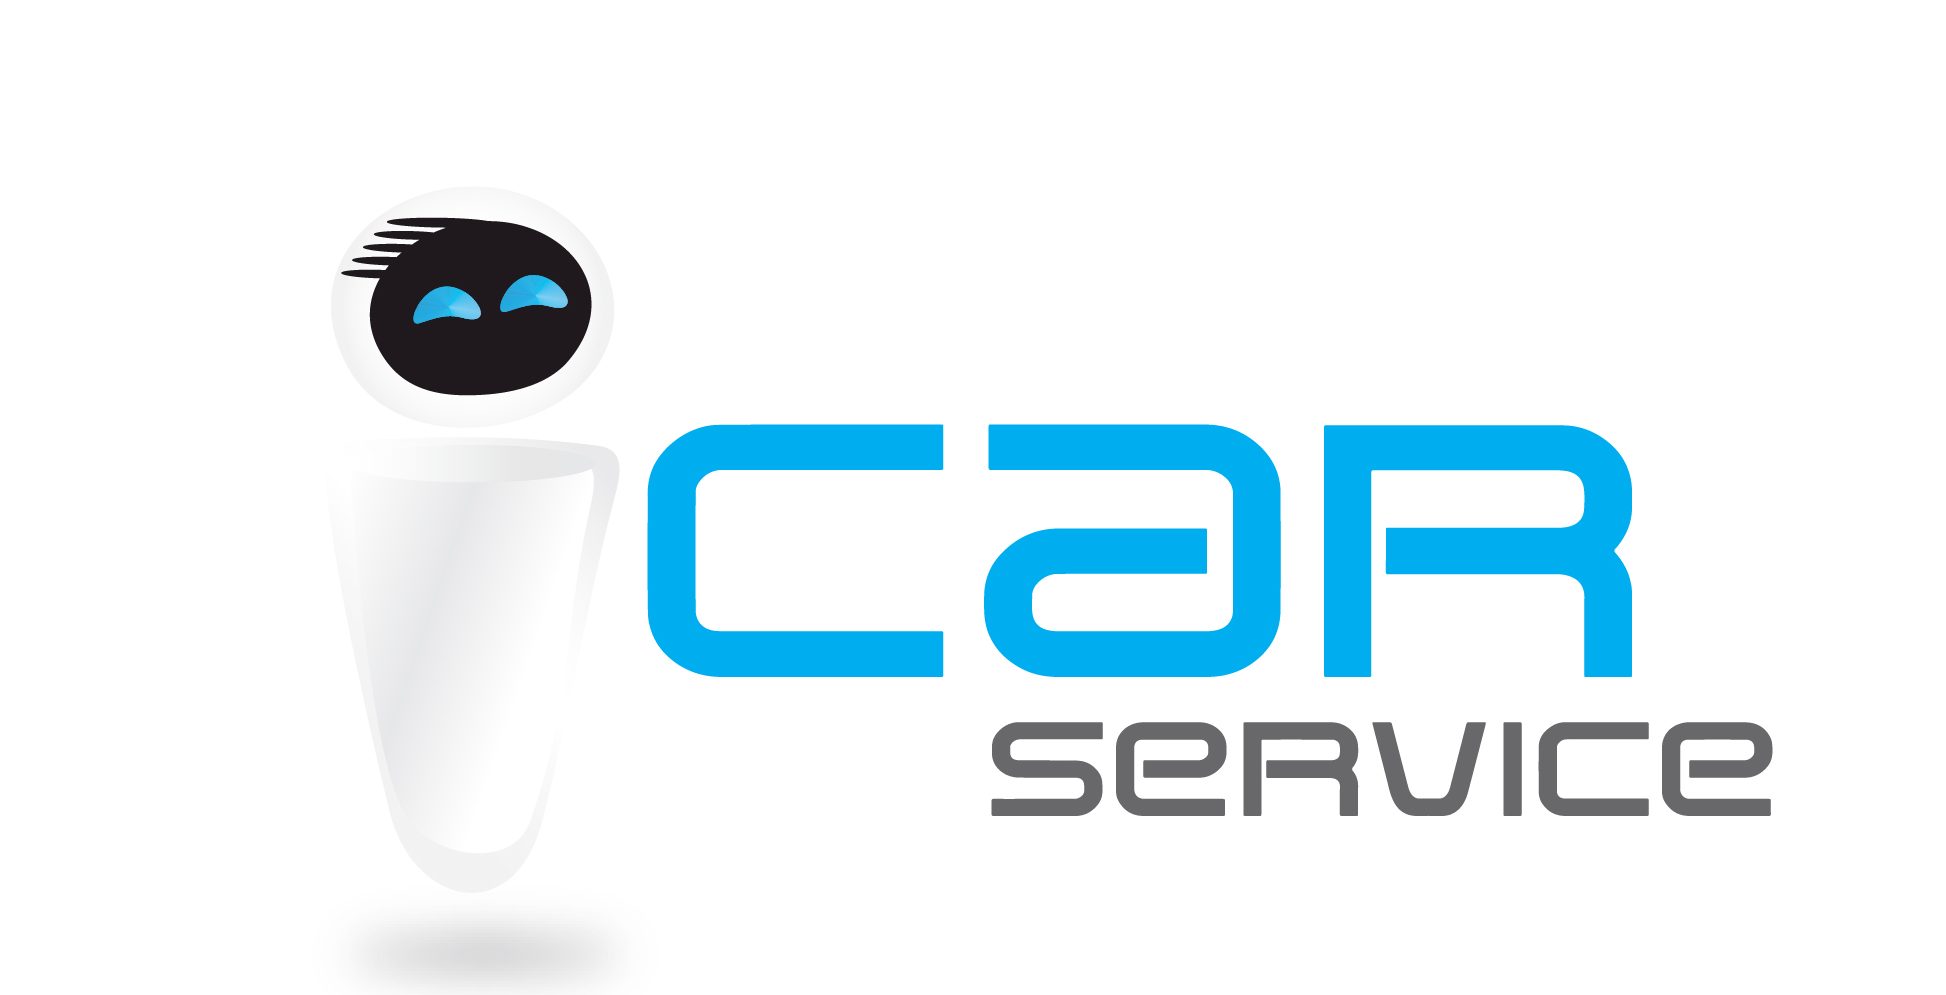 icar services logo